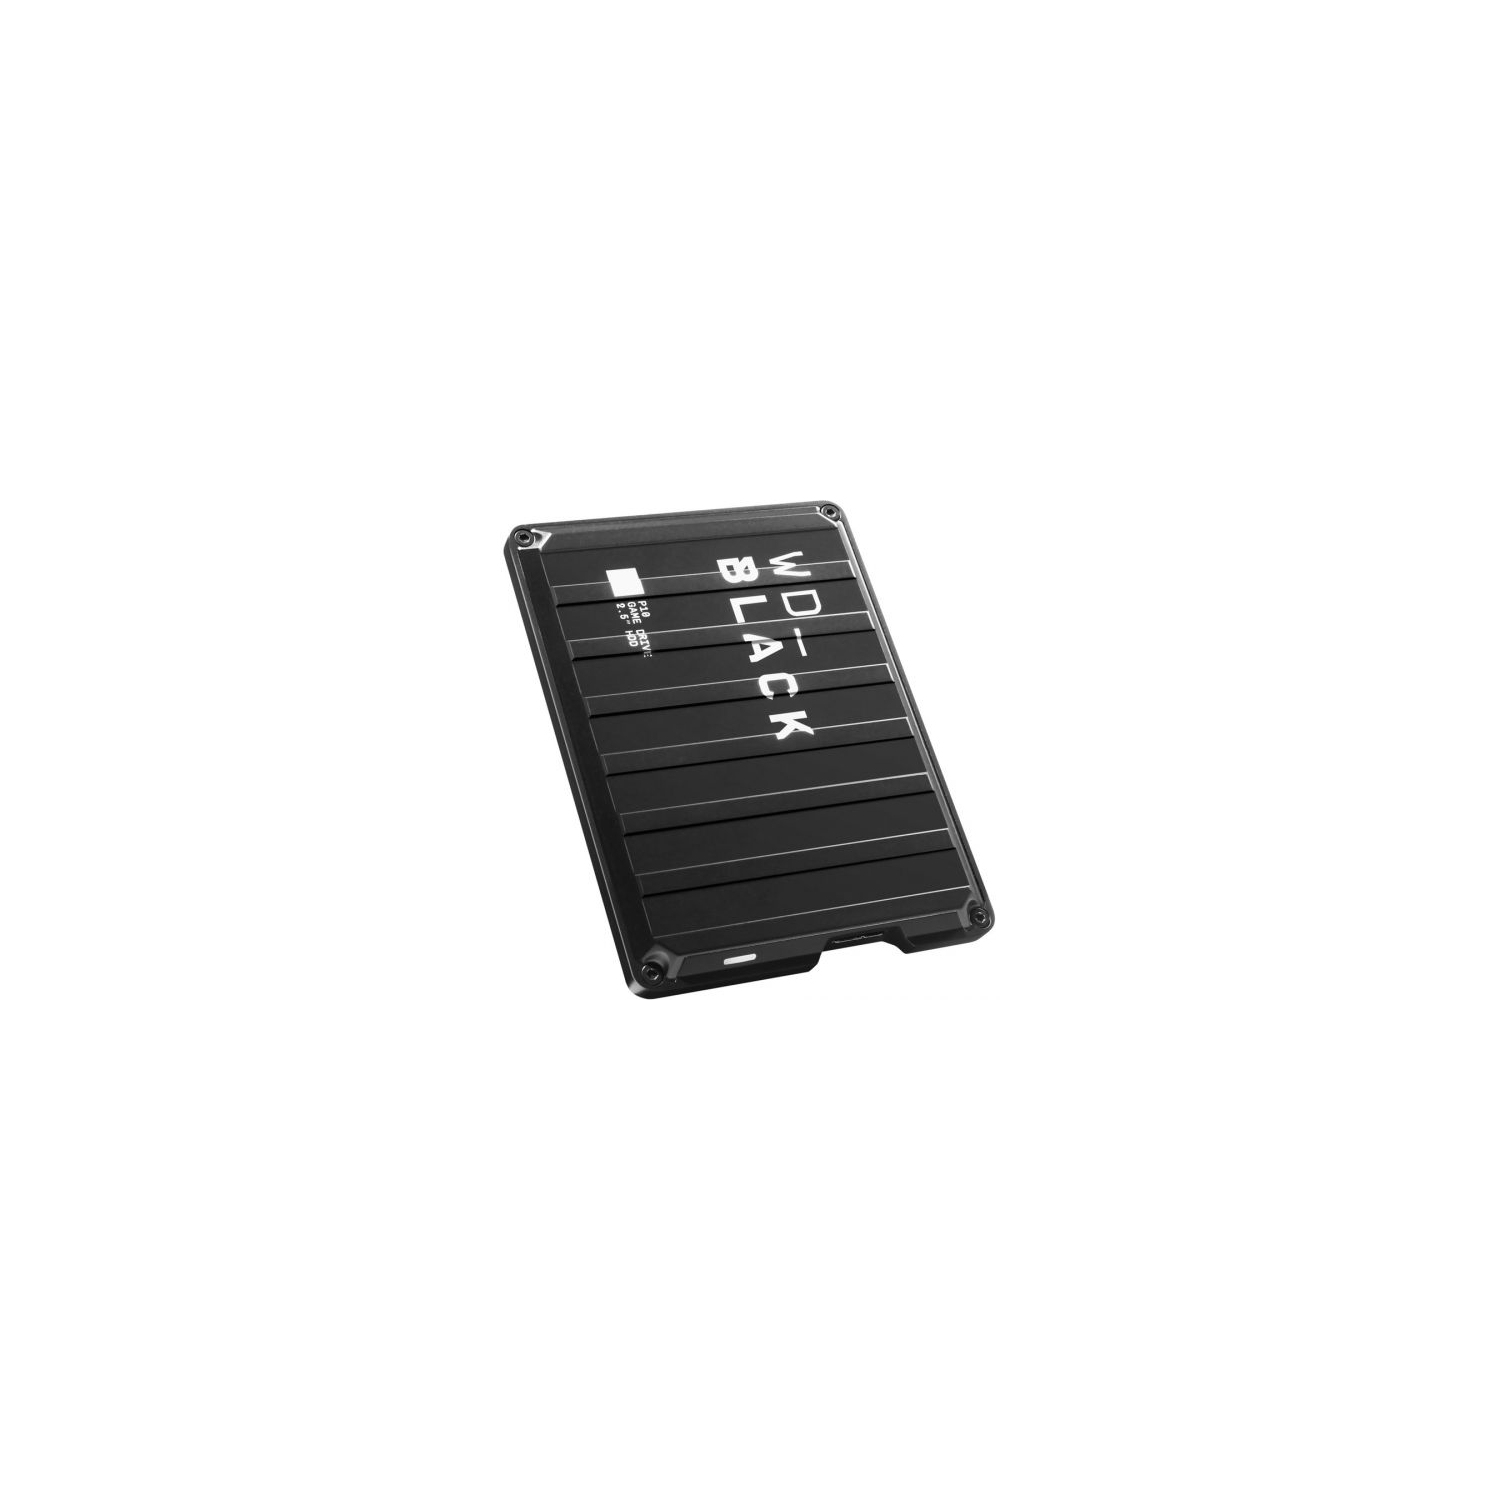 WD Black P10 WDBA3A0040BBK 4 TB Hard Drive - 2.5" Drive - External - Portable - Black